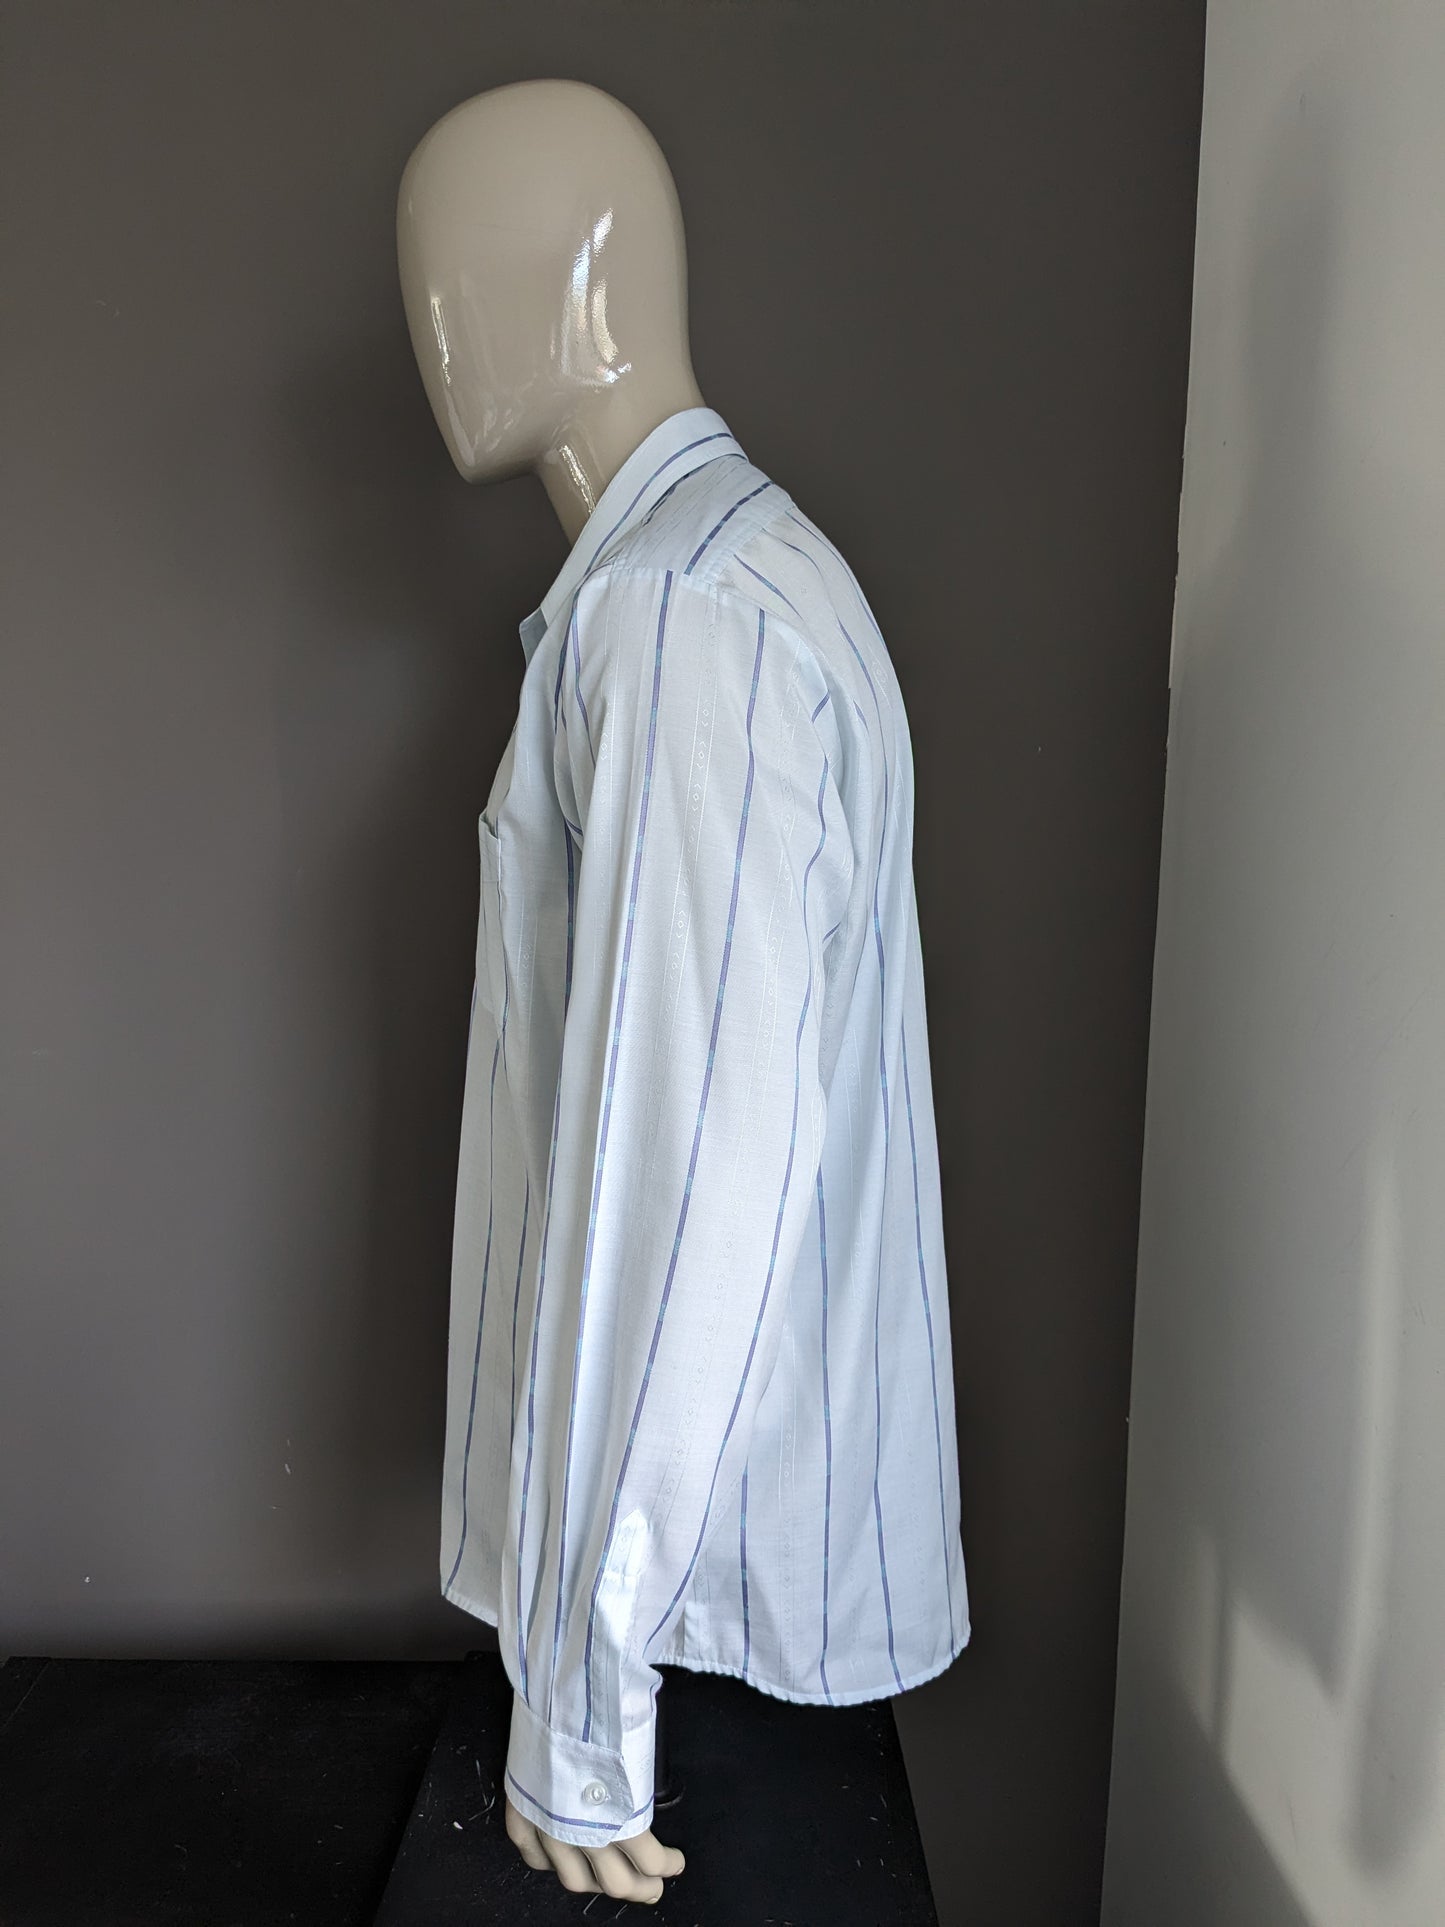 La chemise de Jacqueline de Tancot des années 70 vintage avec collier ponctuel. Motif bleu clair. Taille xl / xxl-2xl.